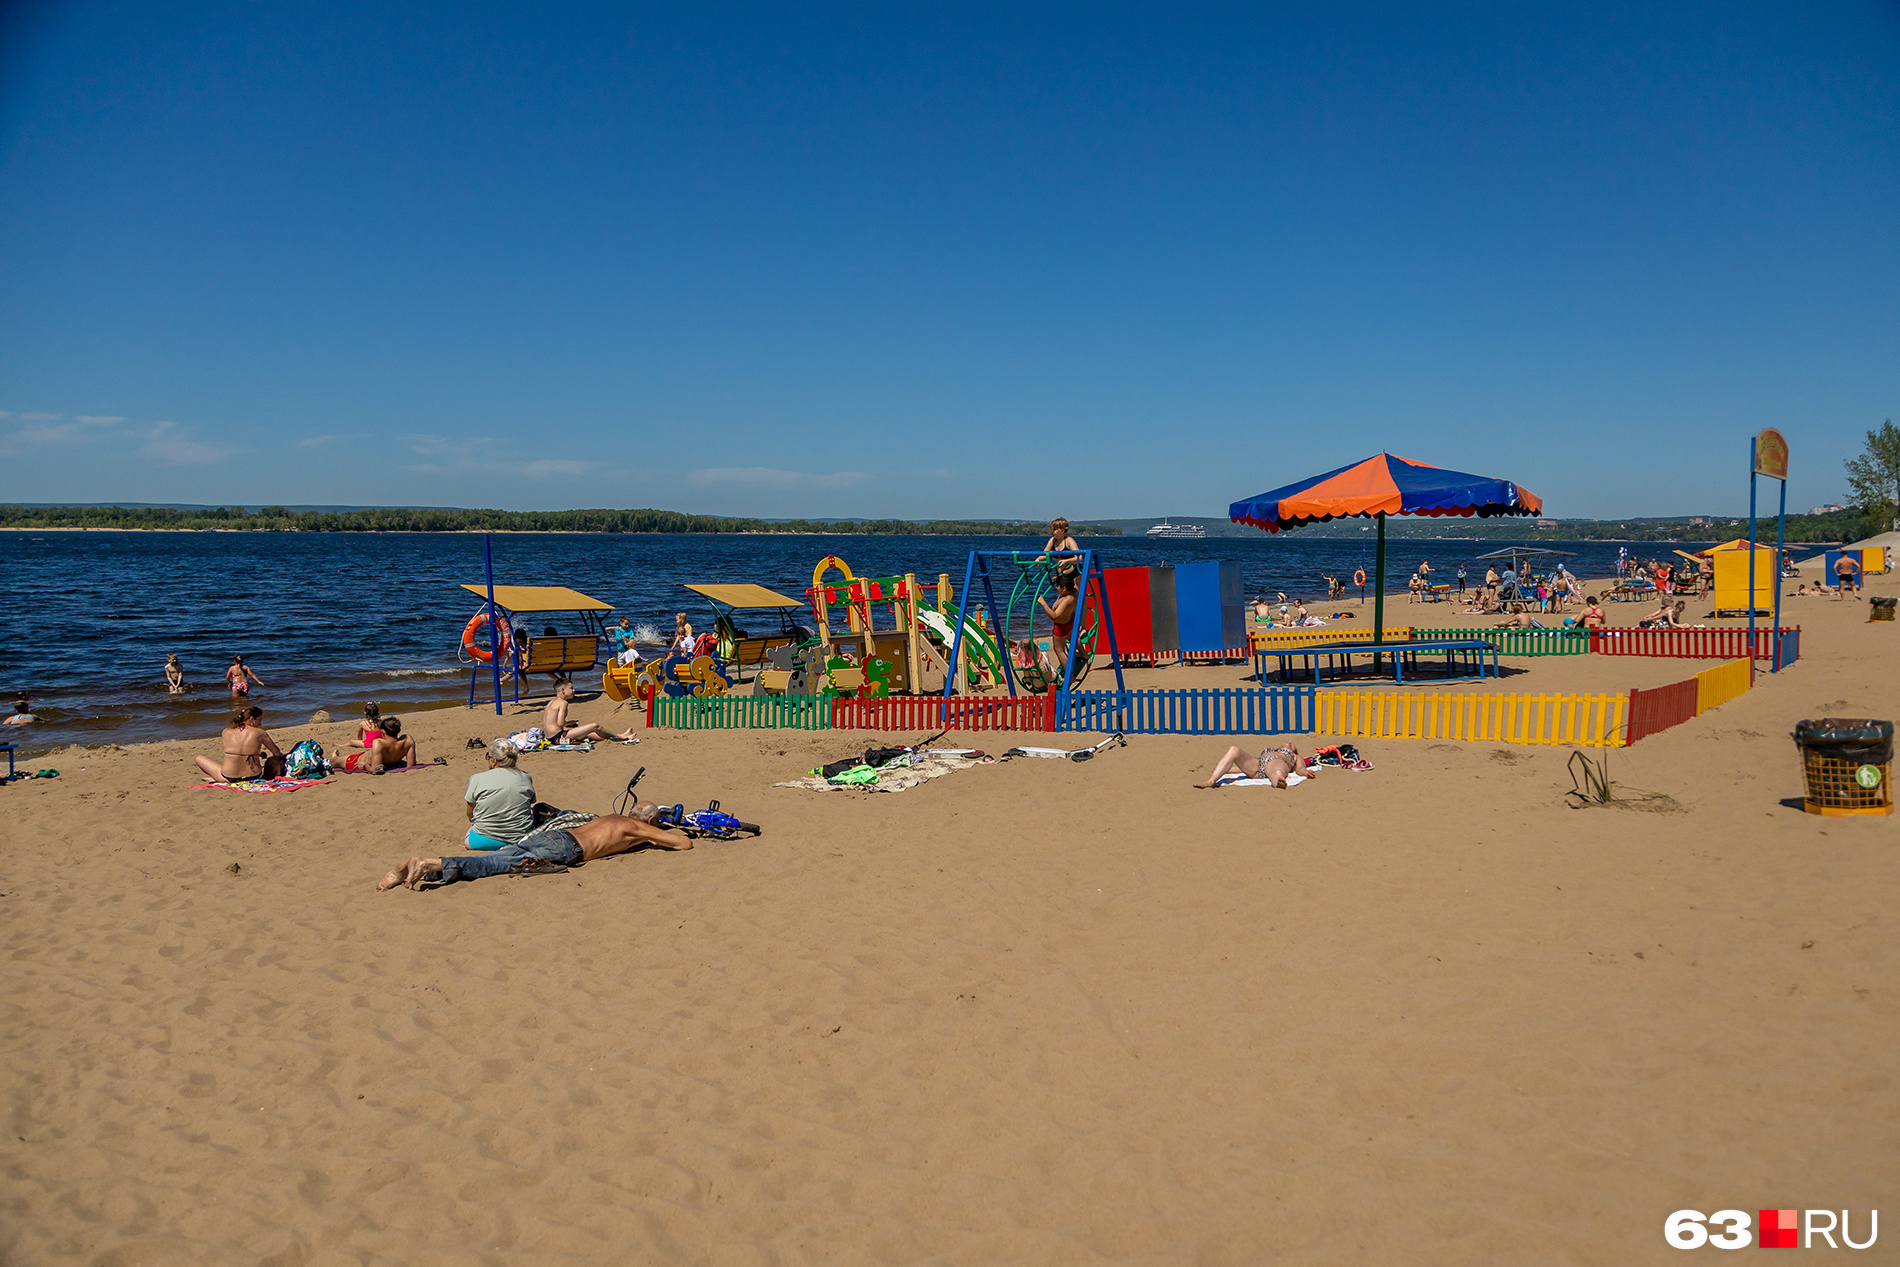 Отличительной особенностью пляжа является большая детская площадка